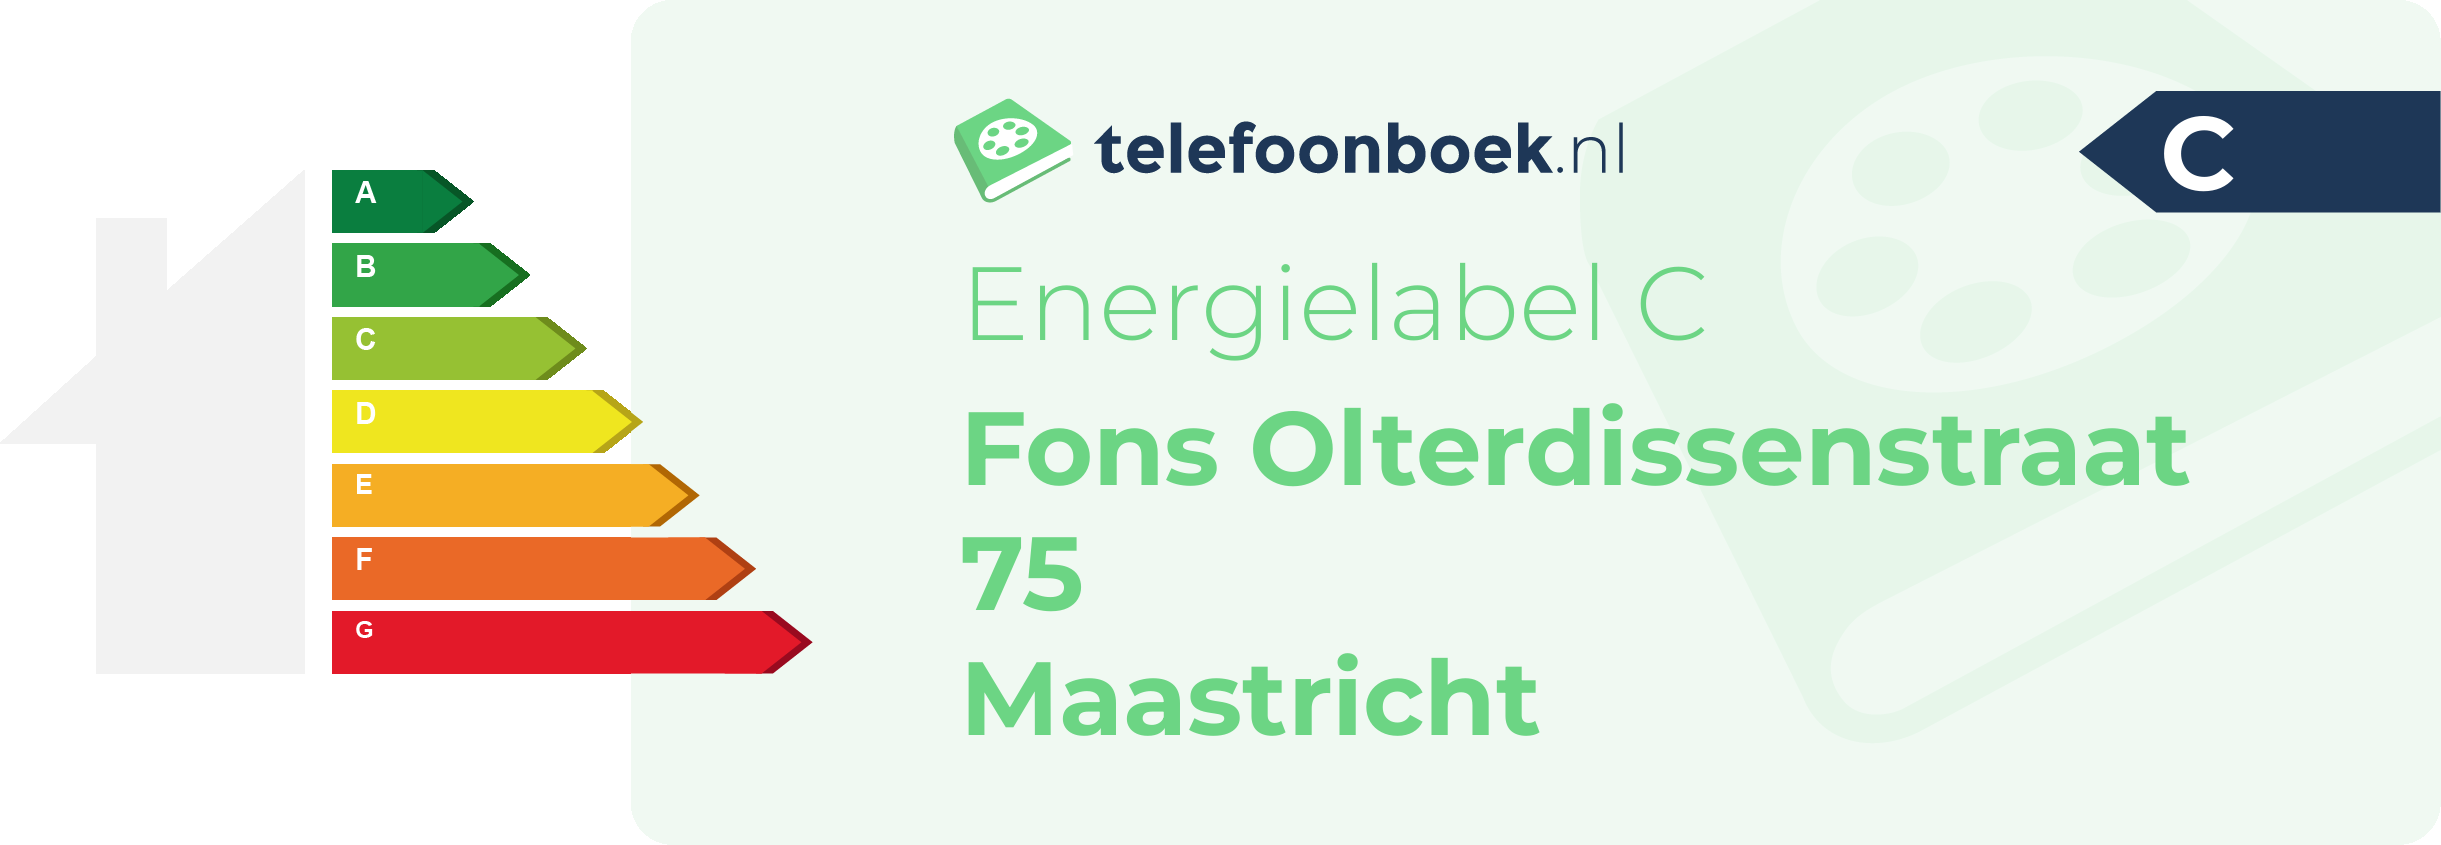 Energielabel Fons Olterdissenstraat 75 Maastricht